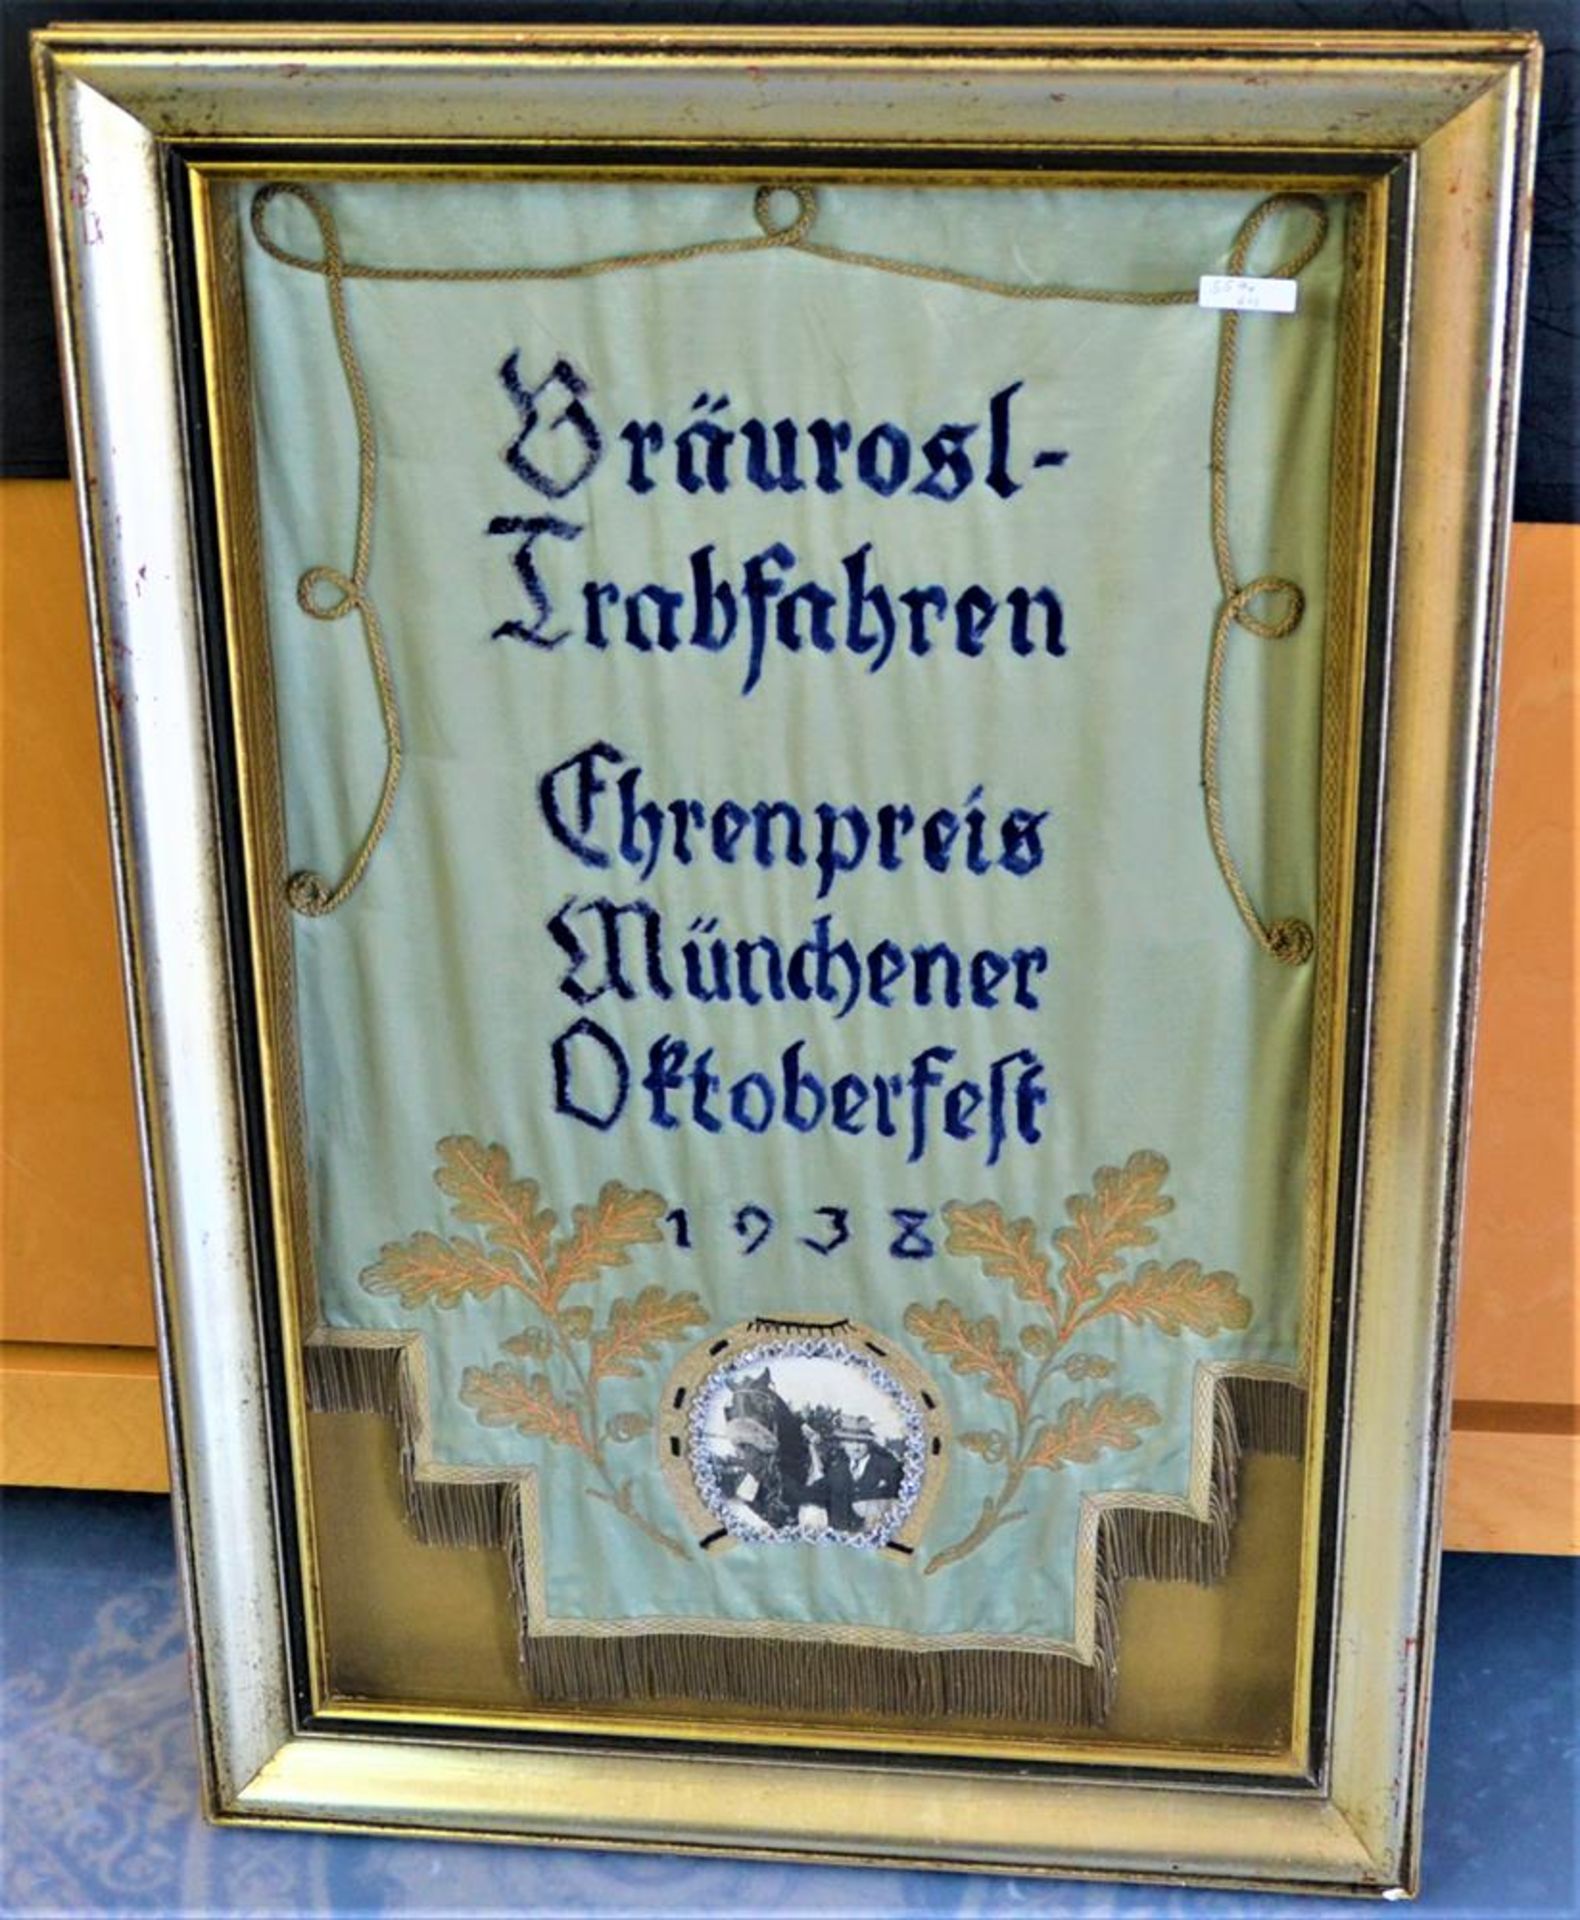 Bräurosl Trabfahren Ehrenpreis München 1938, gestickte Fahne, gerahmt mit Foto, 92 x 63cm,